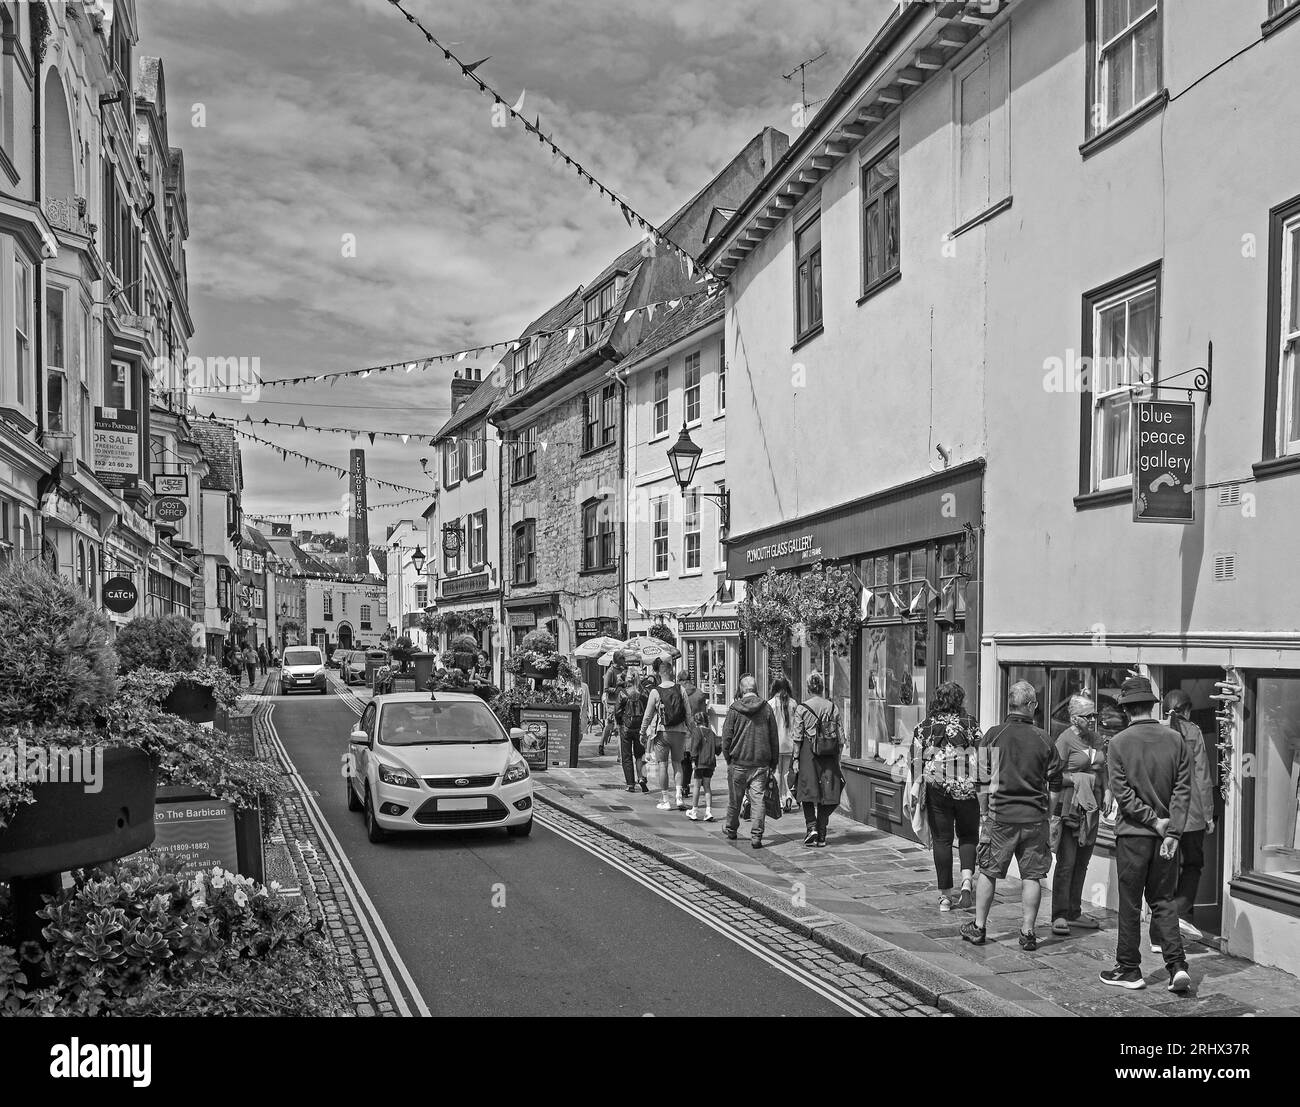 L'image monochrome de Flower Tubs et de Bunting apporte une sensation festive à Southside Street sur la Barbican historique de Plymouth. Un mélange original de petites boutiques, Banque D'Images